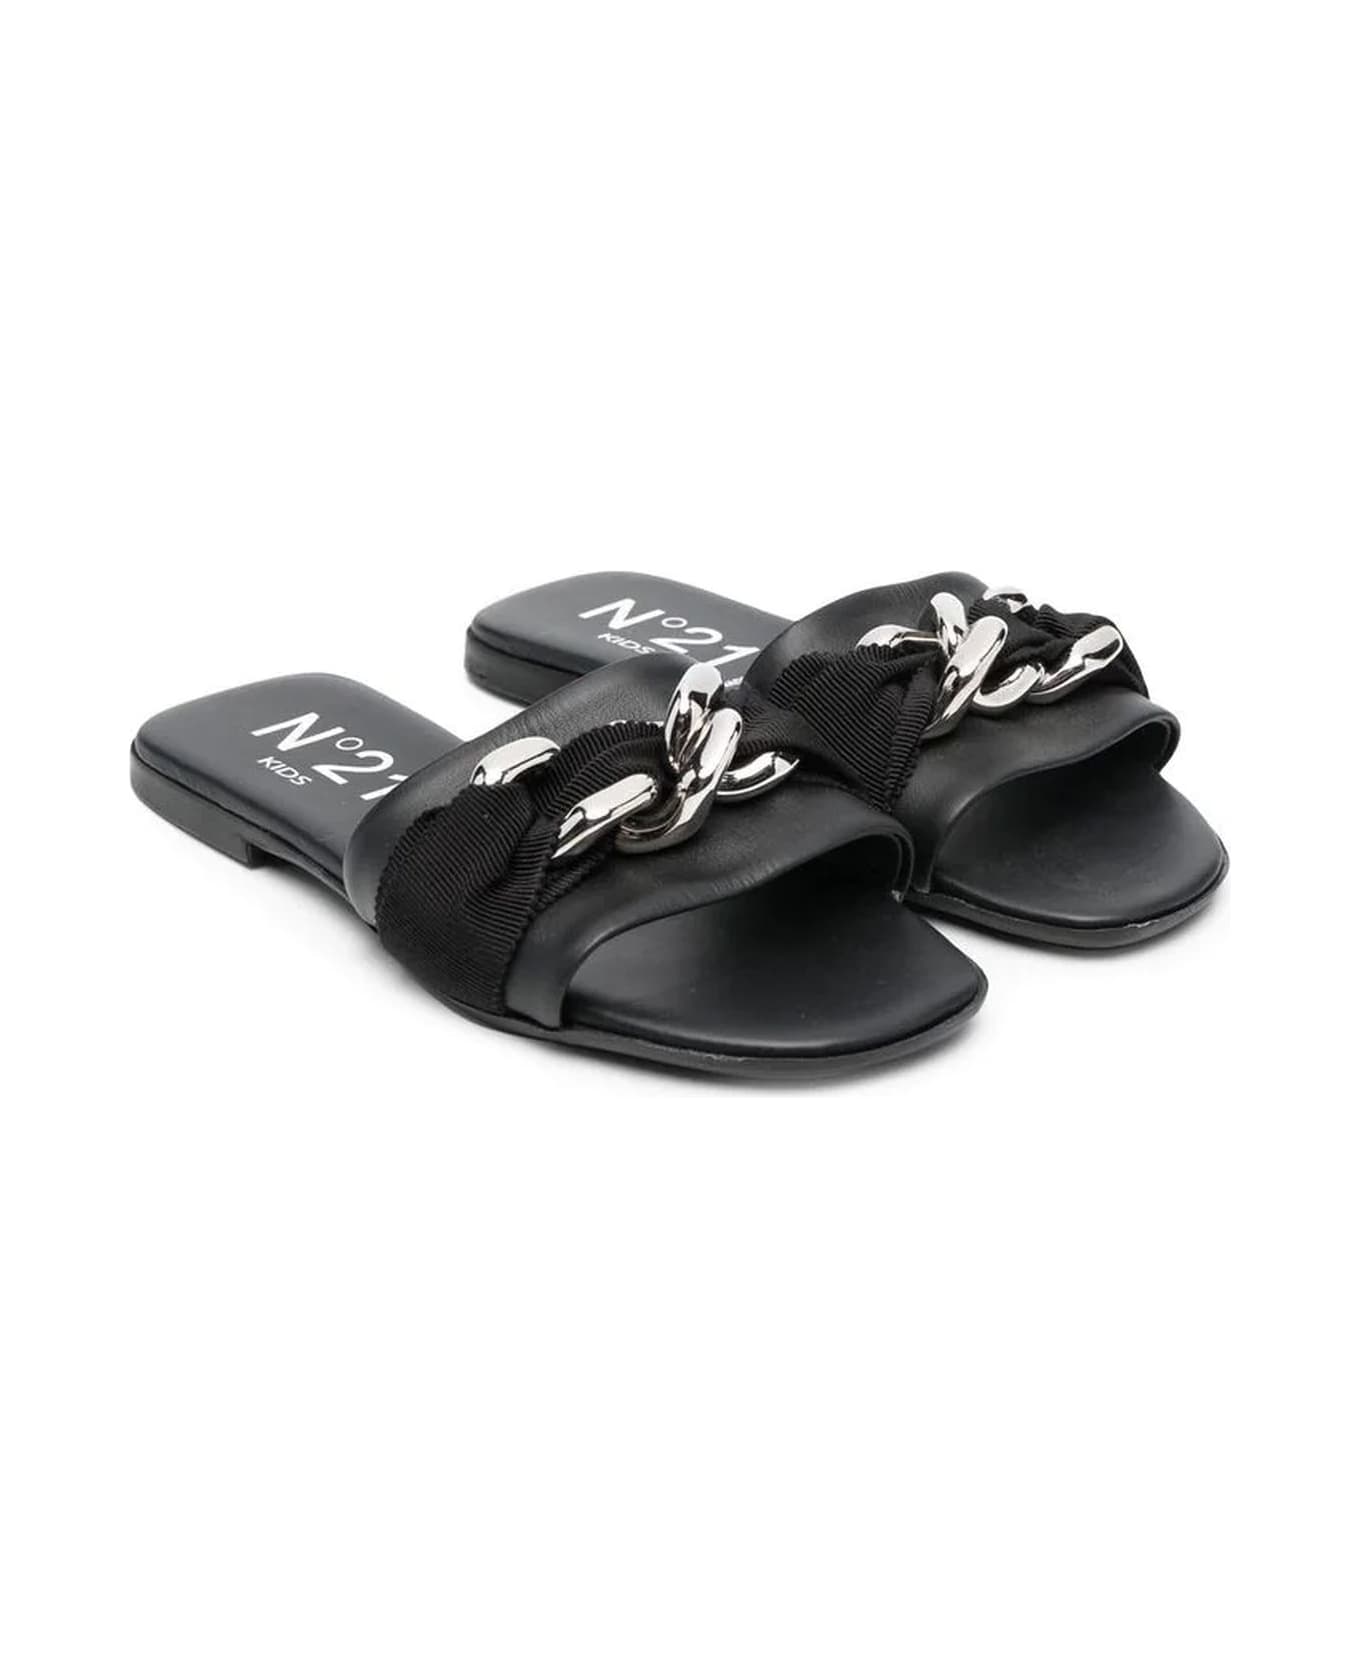 N.21 N°21 Sandals Black - Black